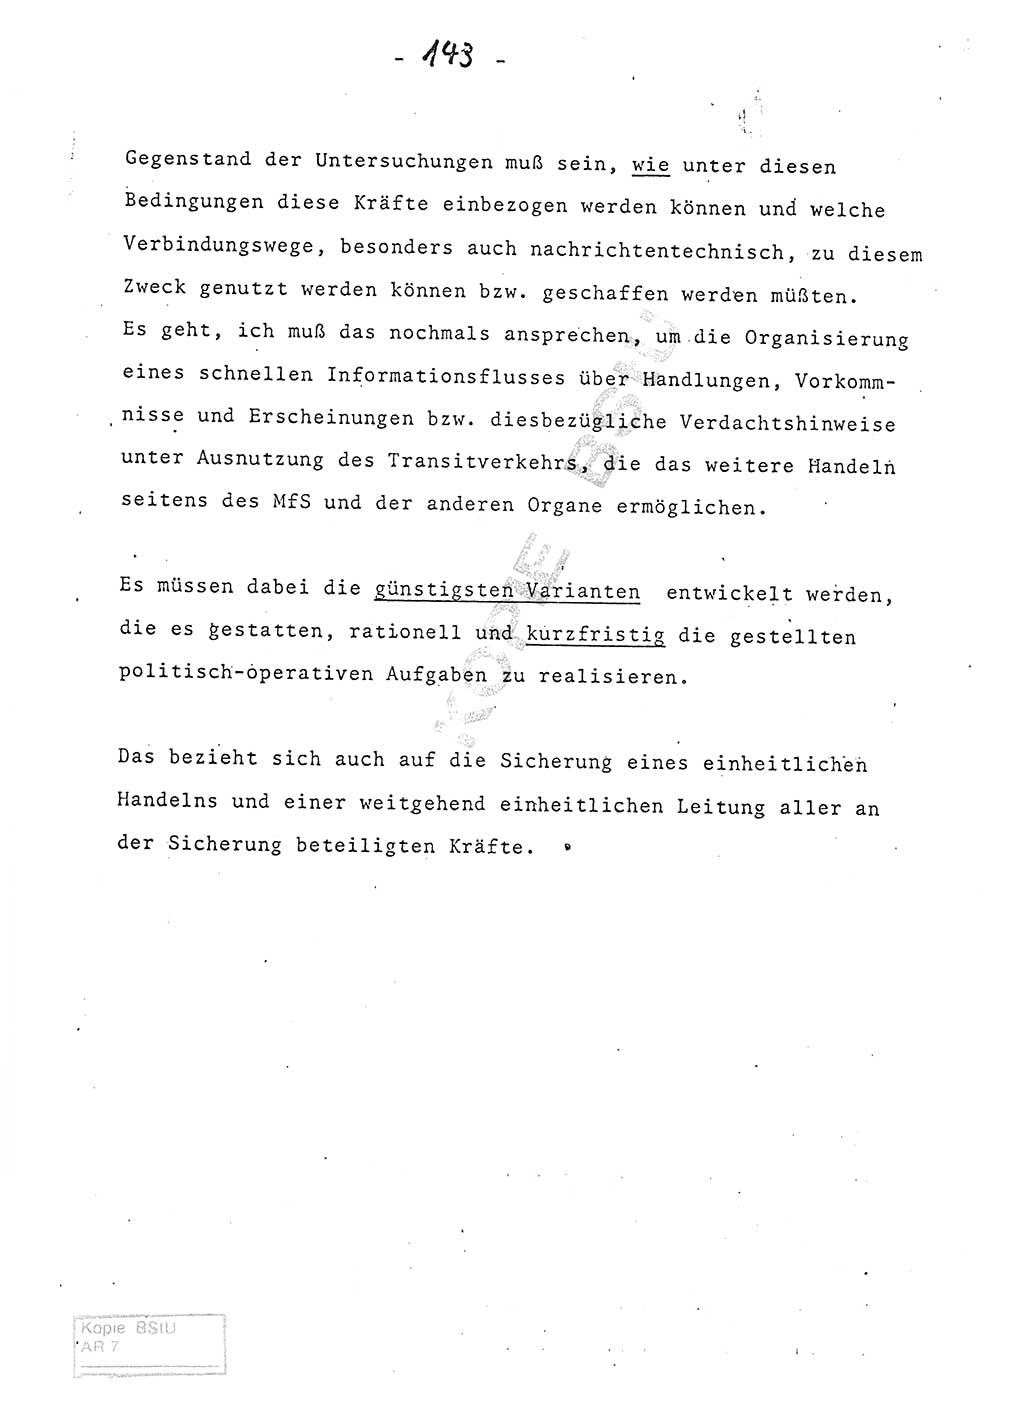 Referat (Entwurf) des Genossen Minister (Generaloberst Erich Mielke) auf der Dienstkonferenz 1972, Ministerium für Staatssicherheit (MfS) [Deutsche Demokratische Republik (DDR)], Der Minister, Geheime Verschlußsache (GVS) 008-150/72, Berlin 25.2.1972, Seite 143 (Ref. Entw. DK MfS DDR Min. GVS 008-150/72 1972, S. 143)